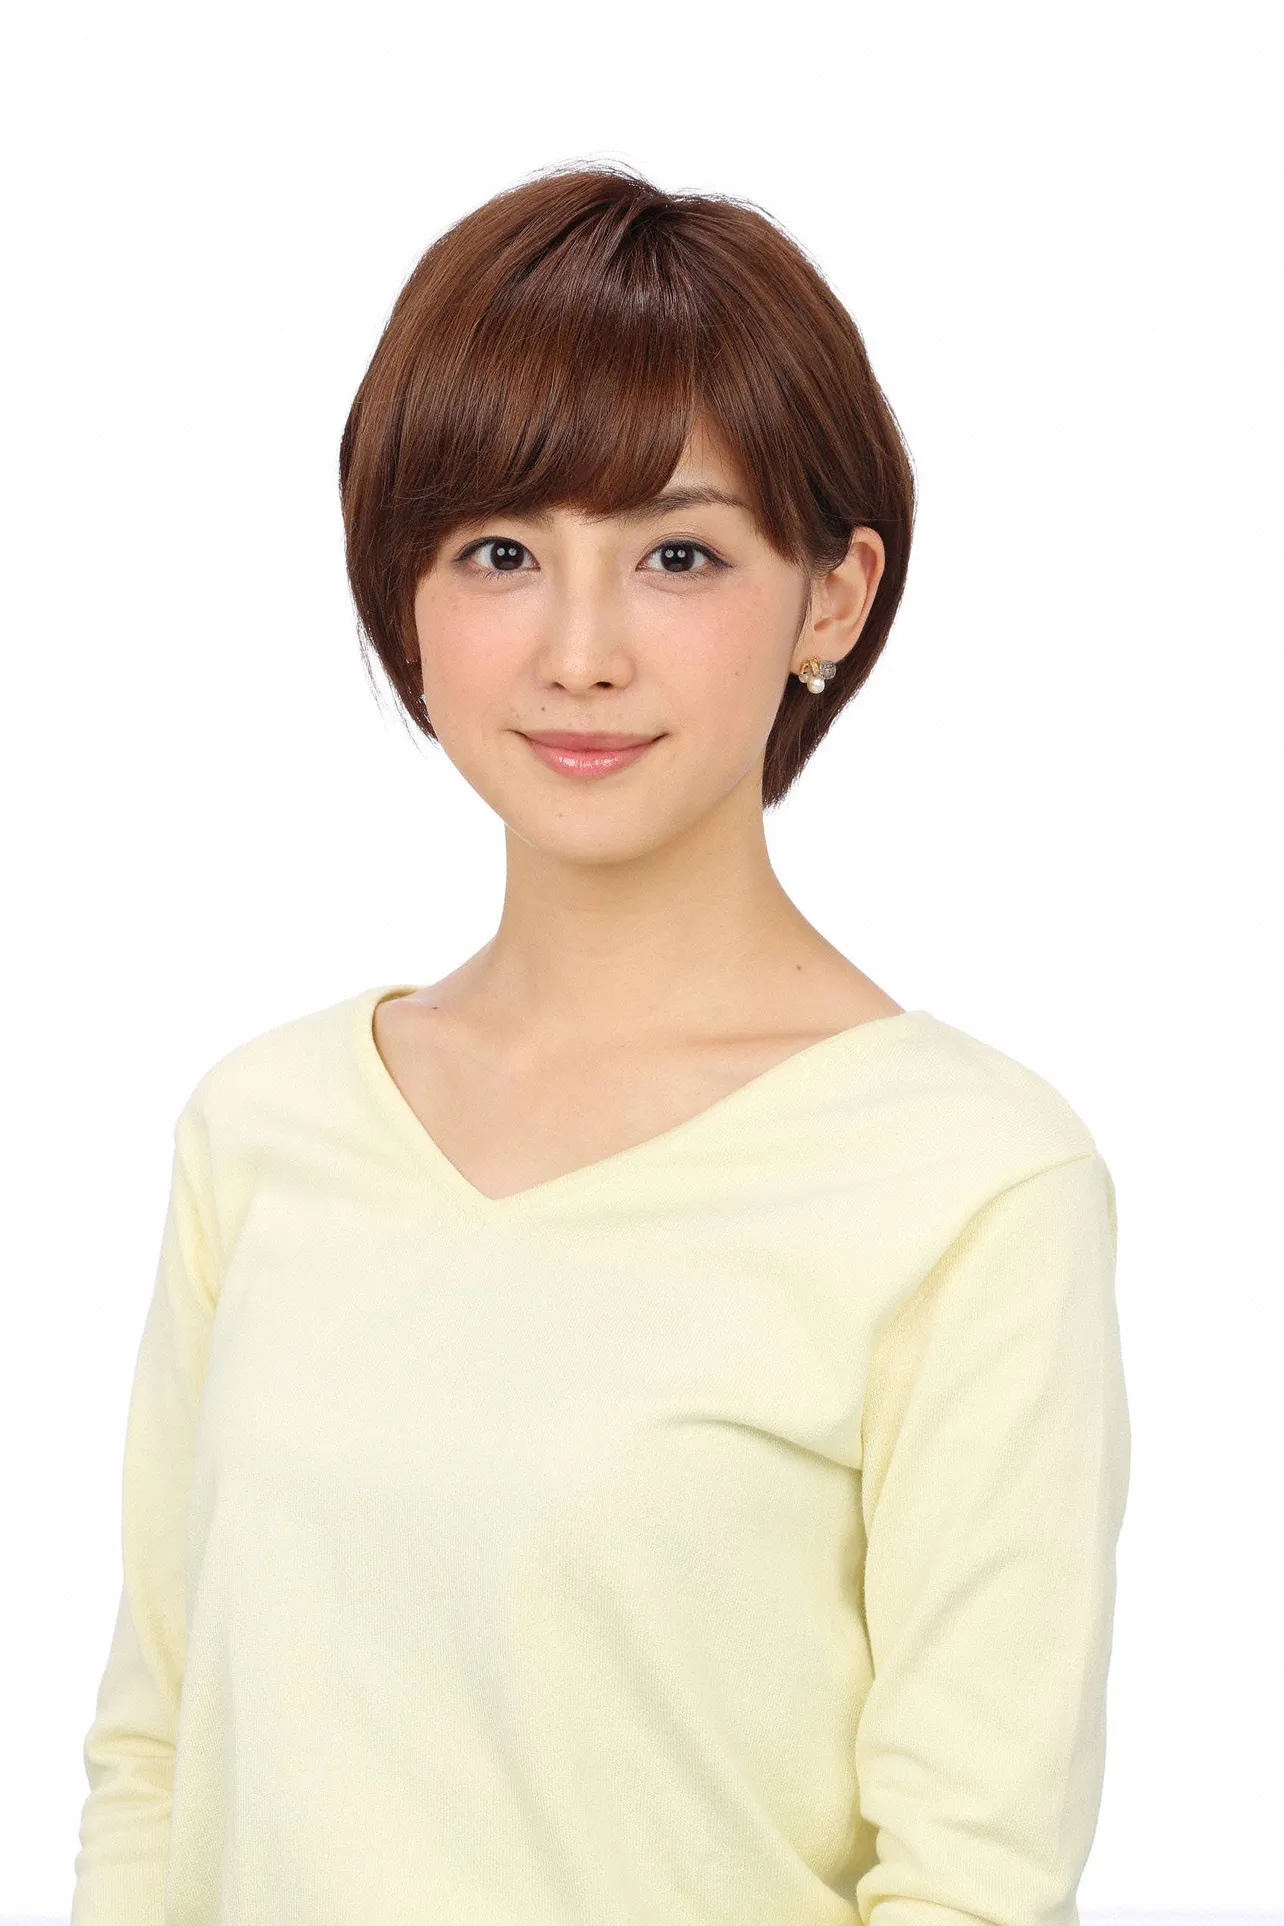 宮司愛海アナがスポーツニュース番組のメインキャスターに初挑戦！